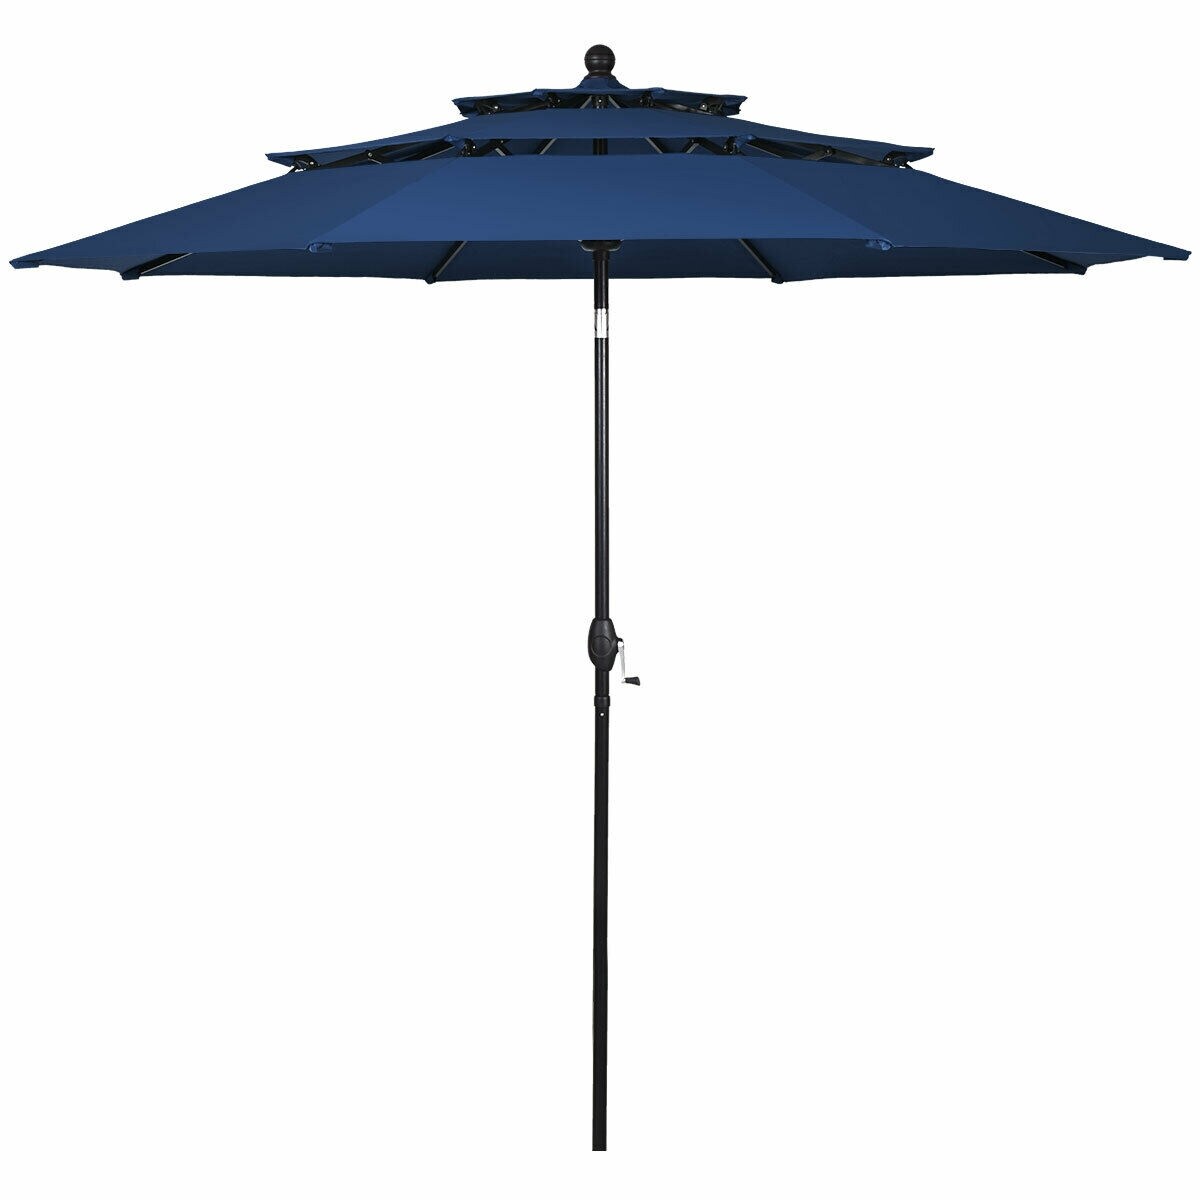 Outdoor Umbrellas Patio Umbrellas & Accessories at Lowes.com